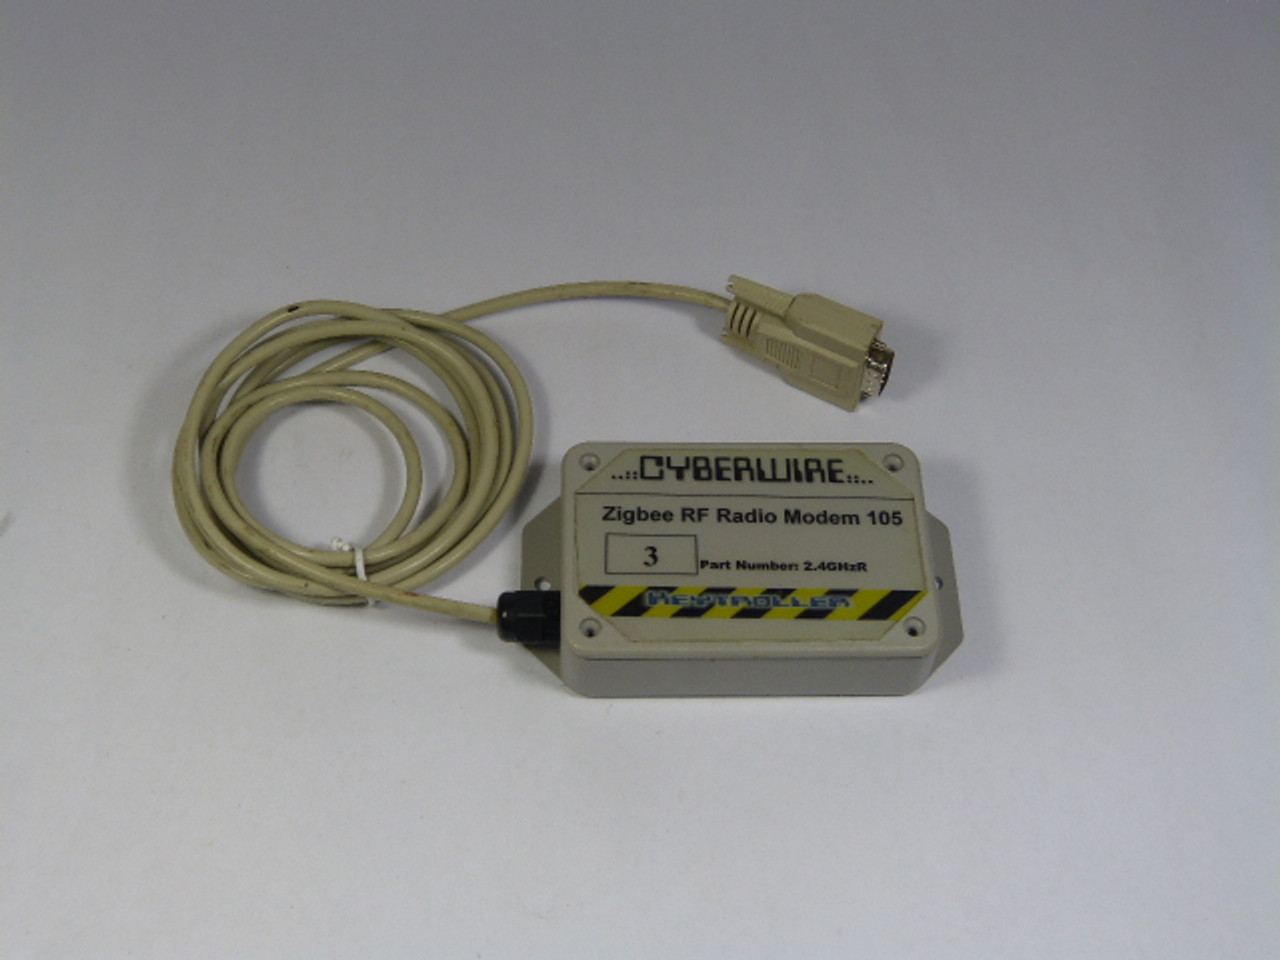 Keytroller 2.4GHZR Cyberwire Radio Modem USED